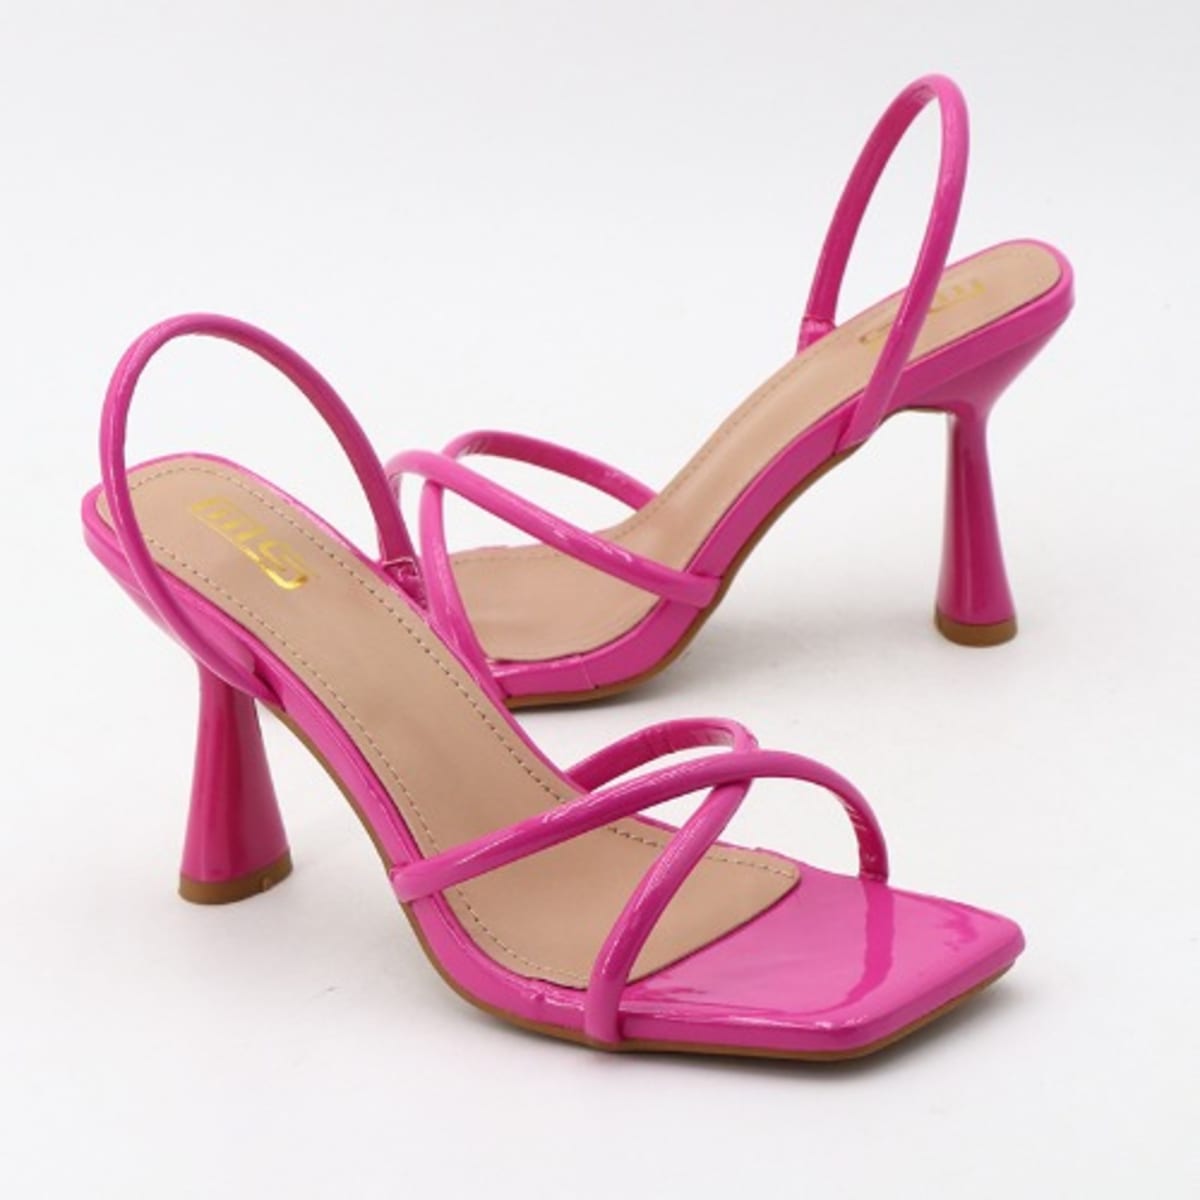 Pink Patent Sandal-Strap Heels - Tulleen.com-donghotantheky.vn